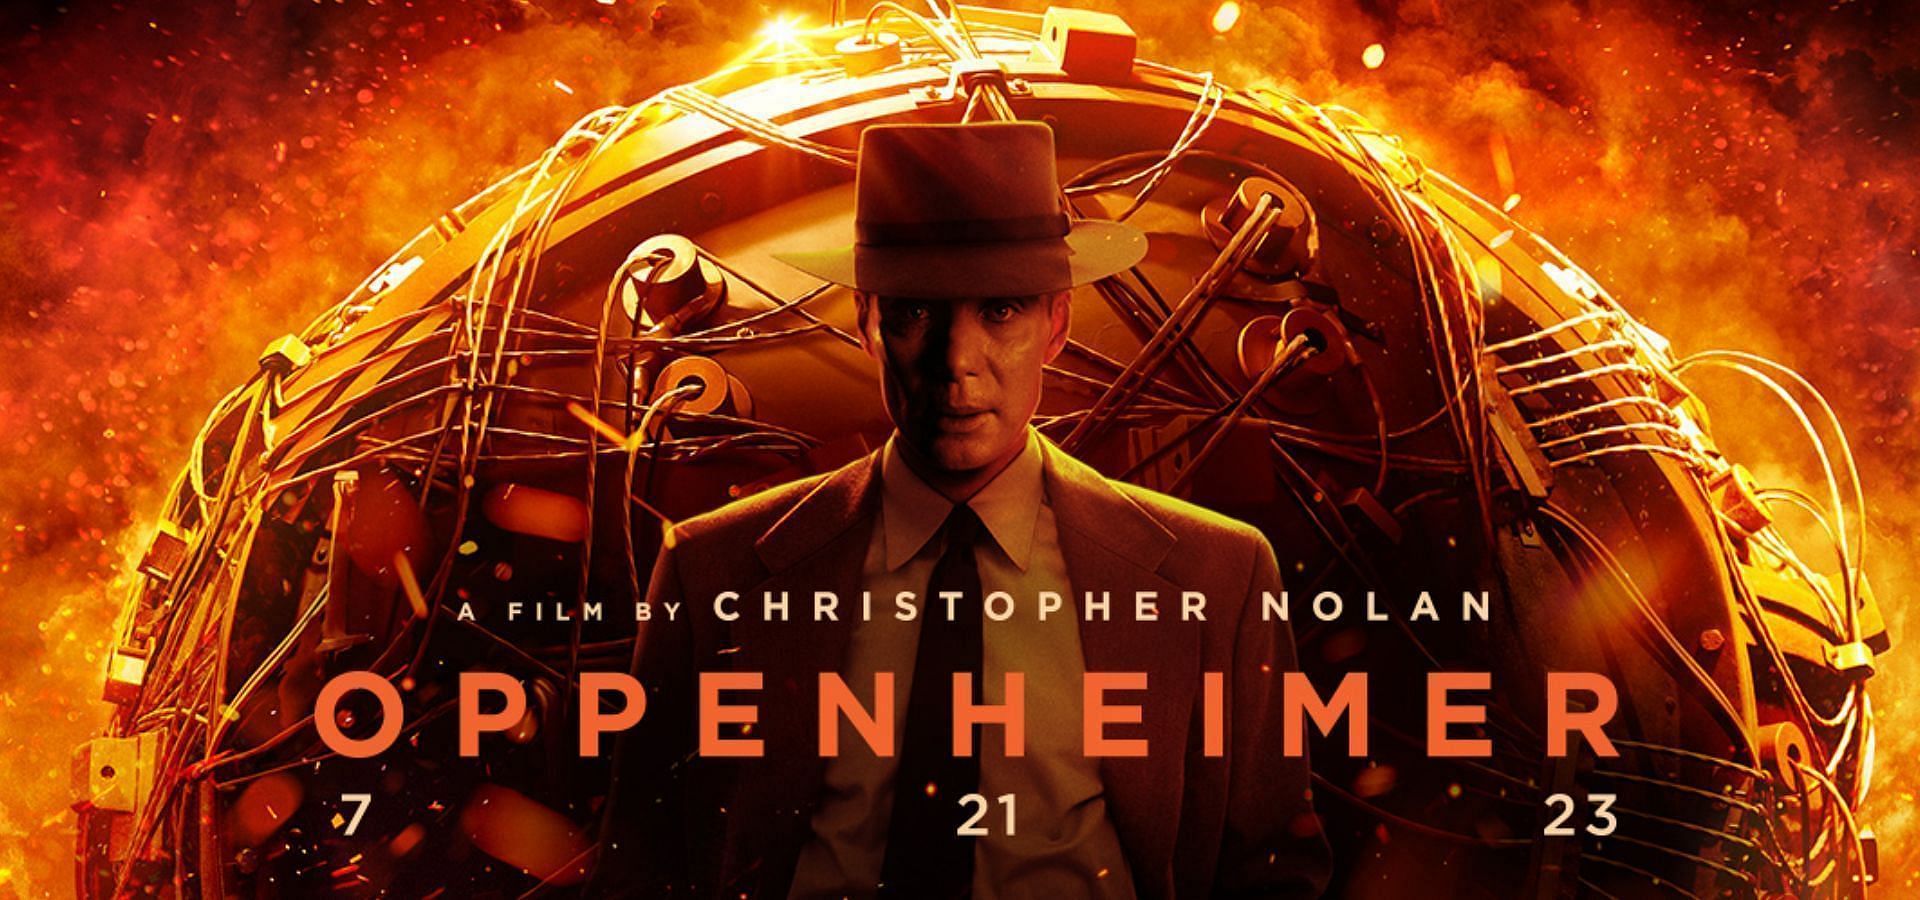 Oppenheimer Poster (Image via Universal)